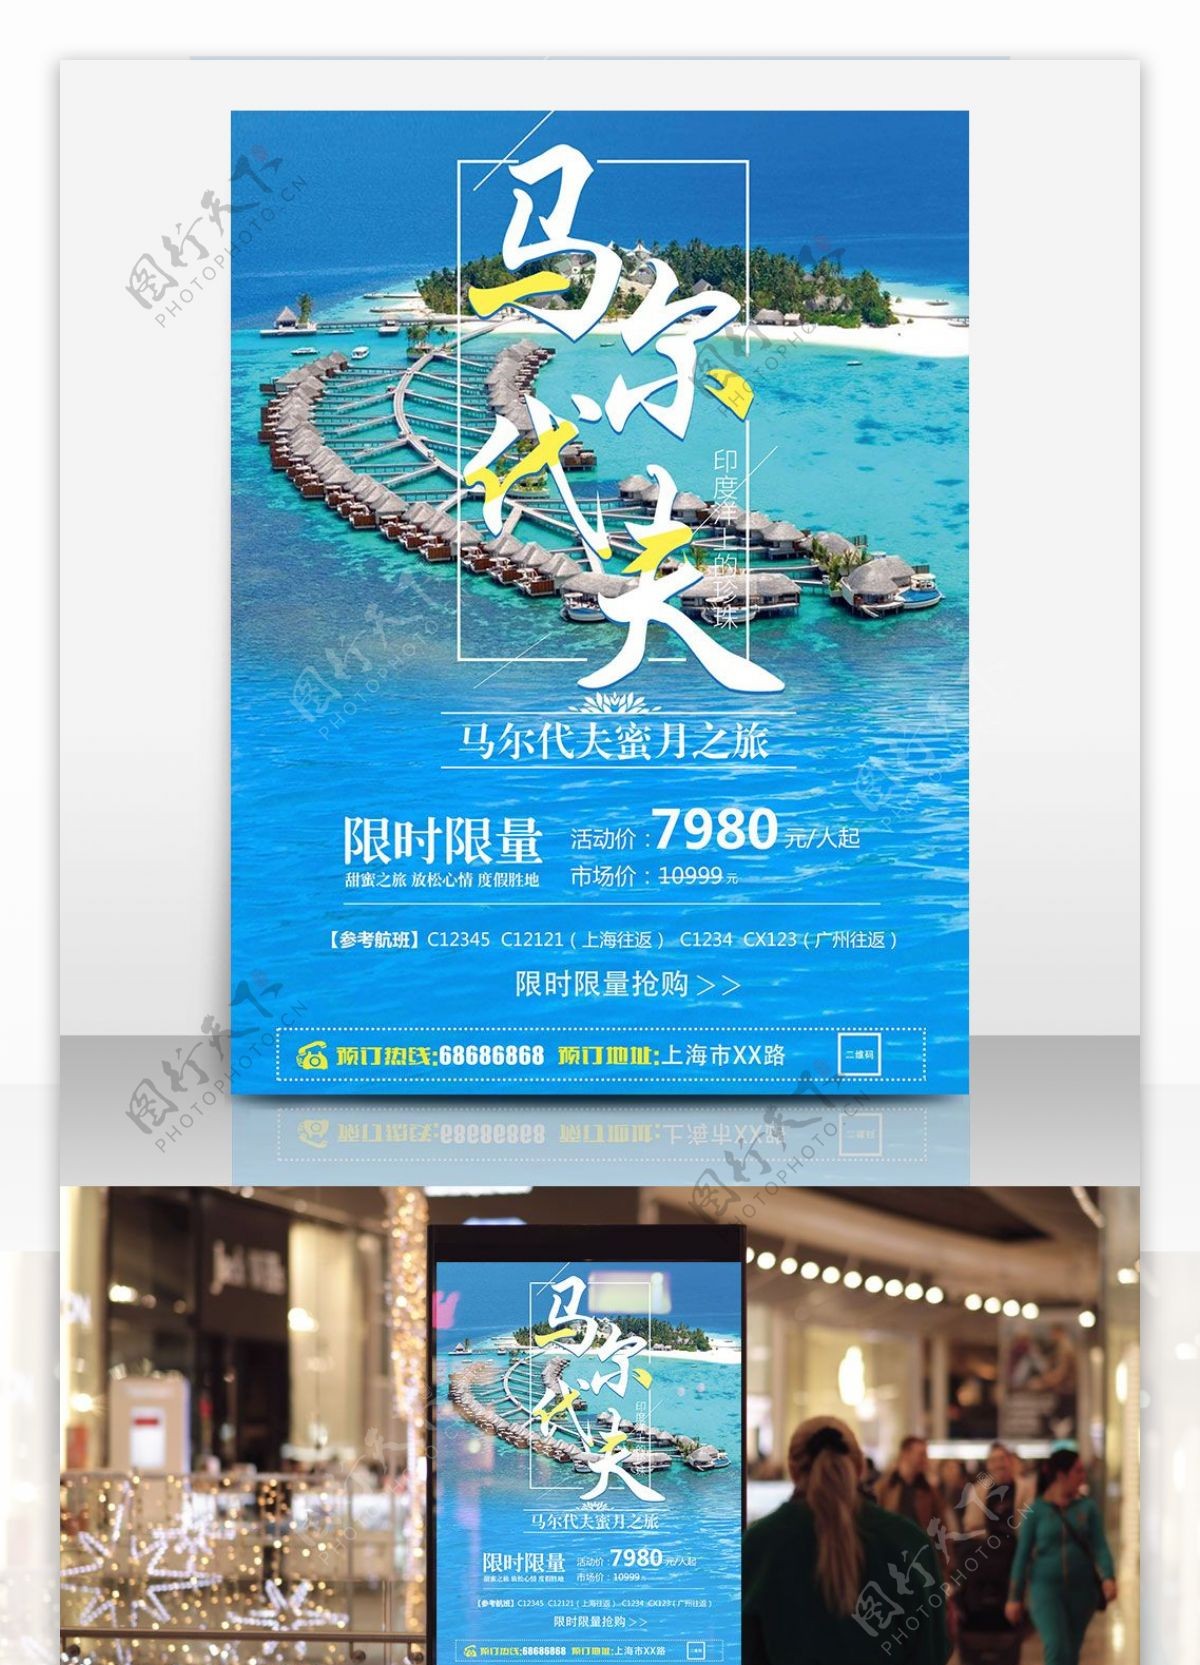 夏日马尔代夫旅游海洋蓝色简约商业海报设计